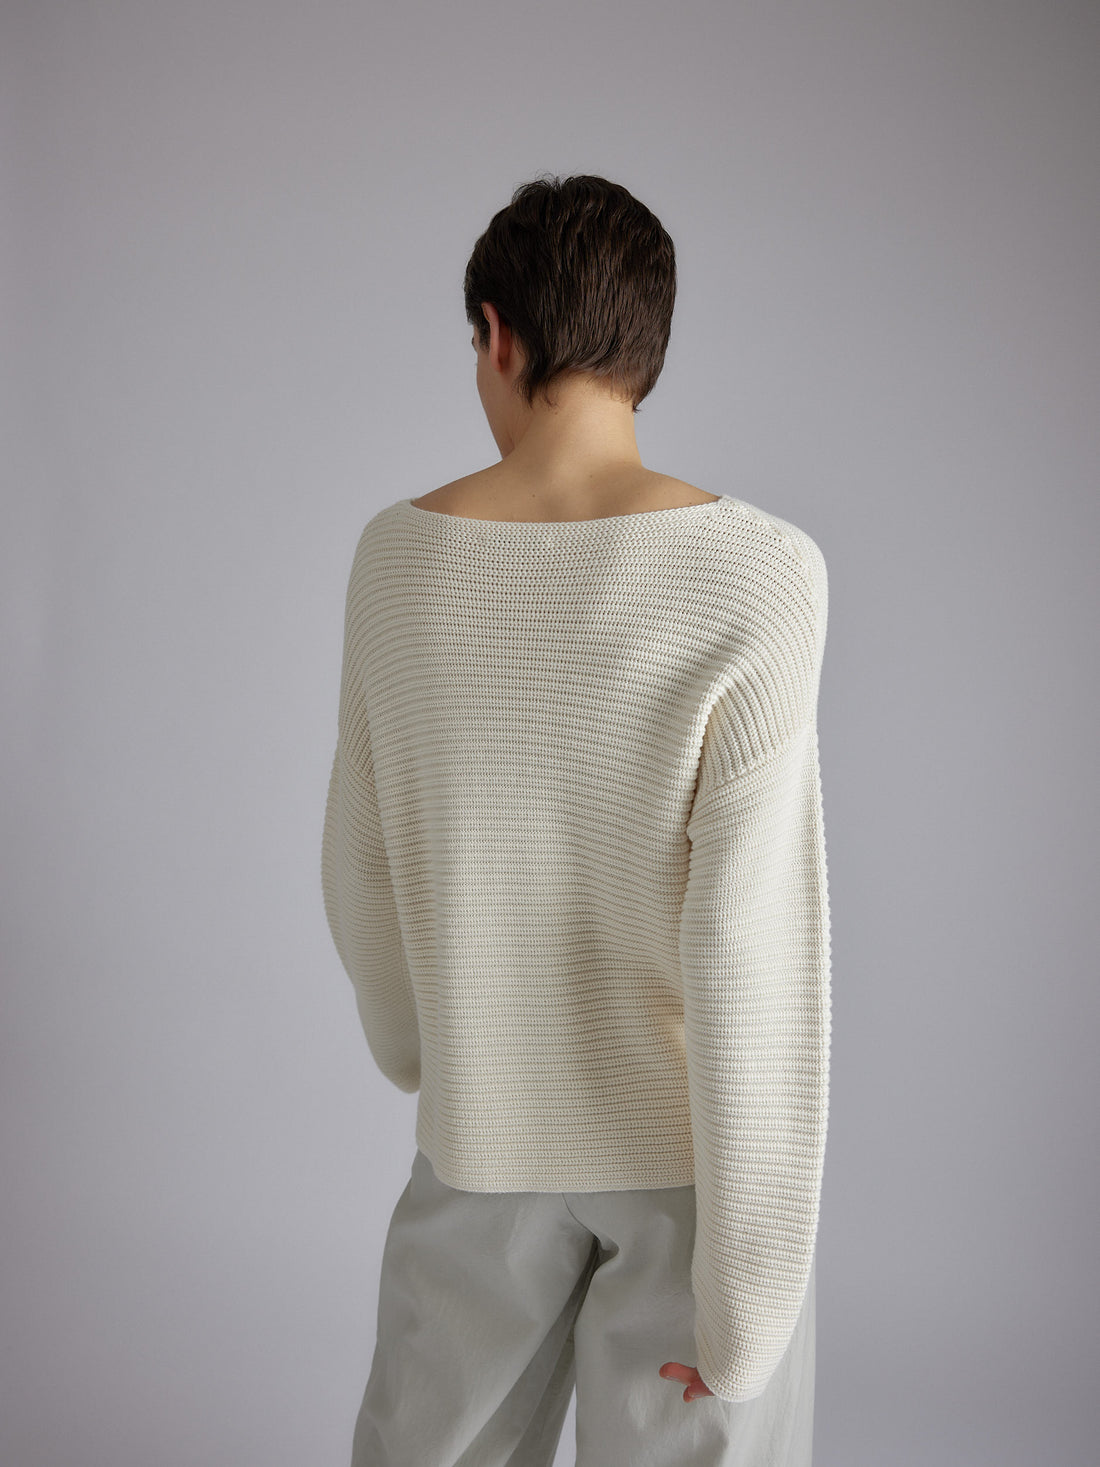 Ribscott Marin Sweater 24p Off White